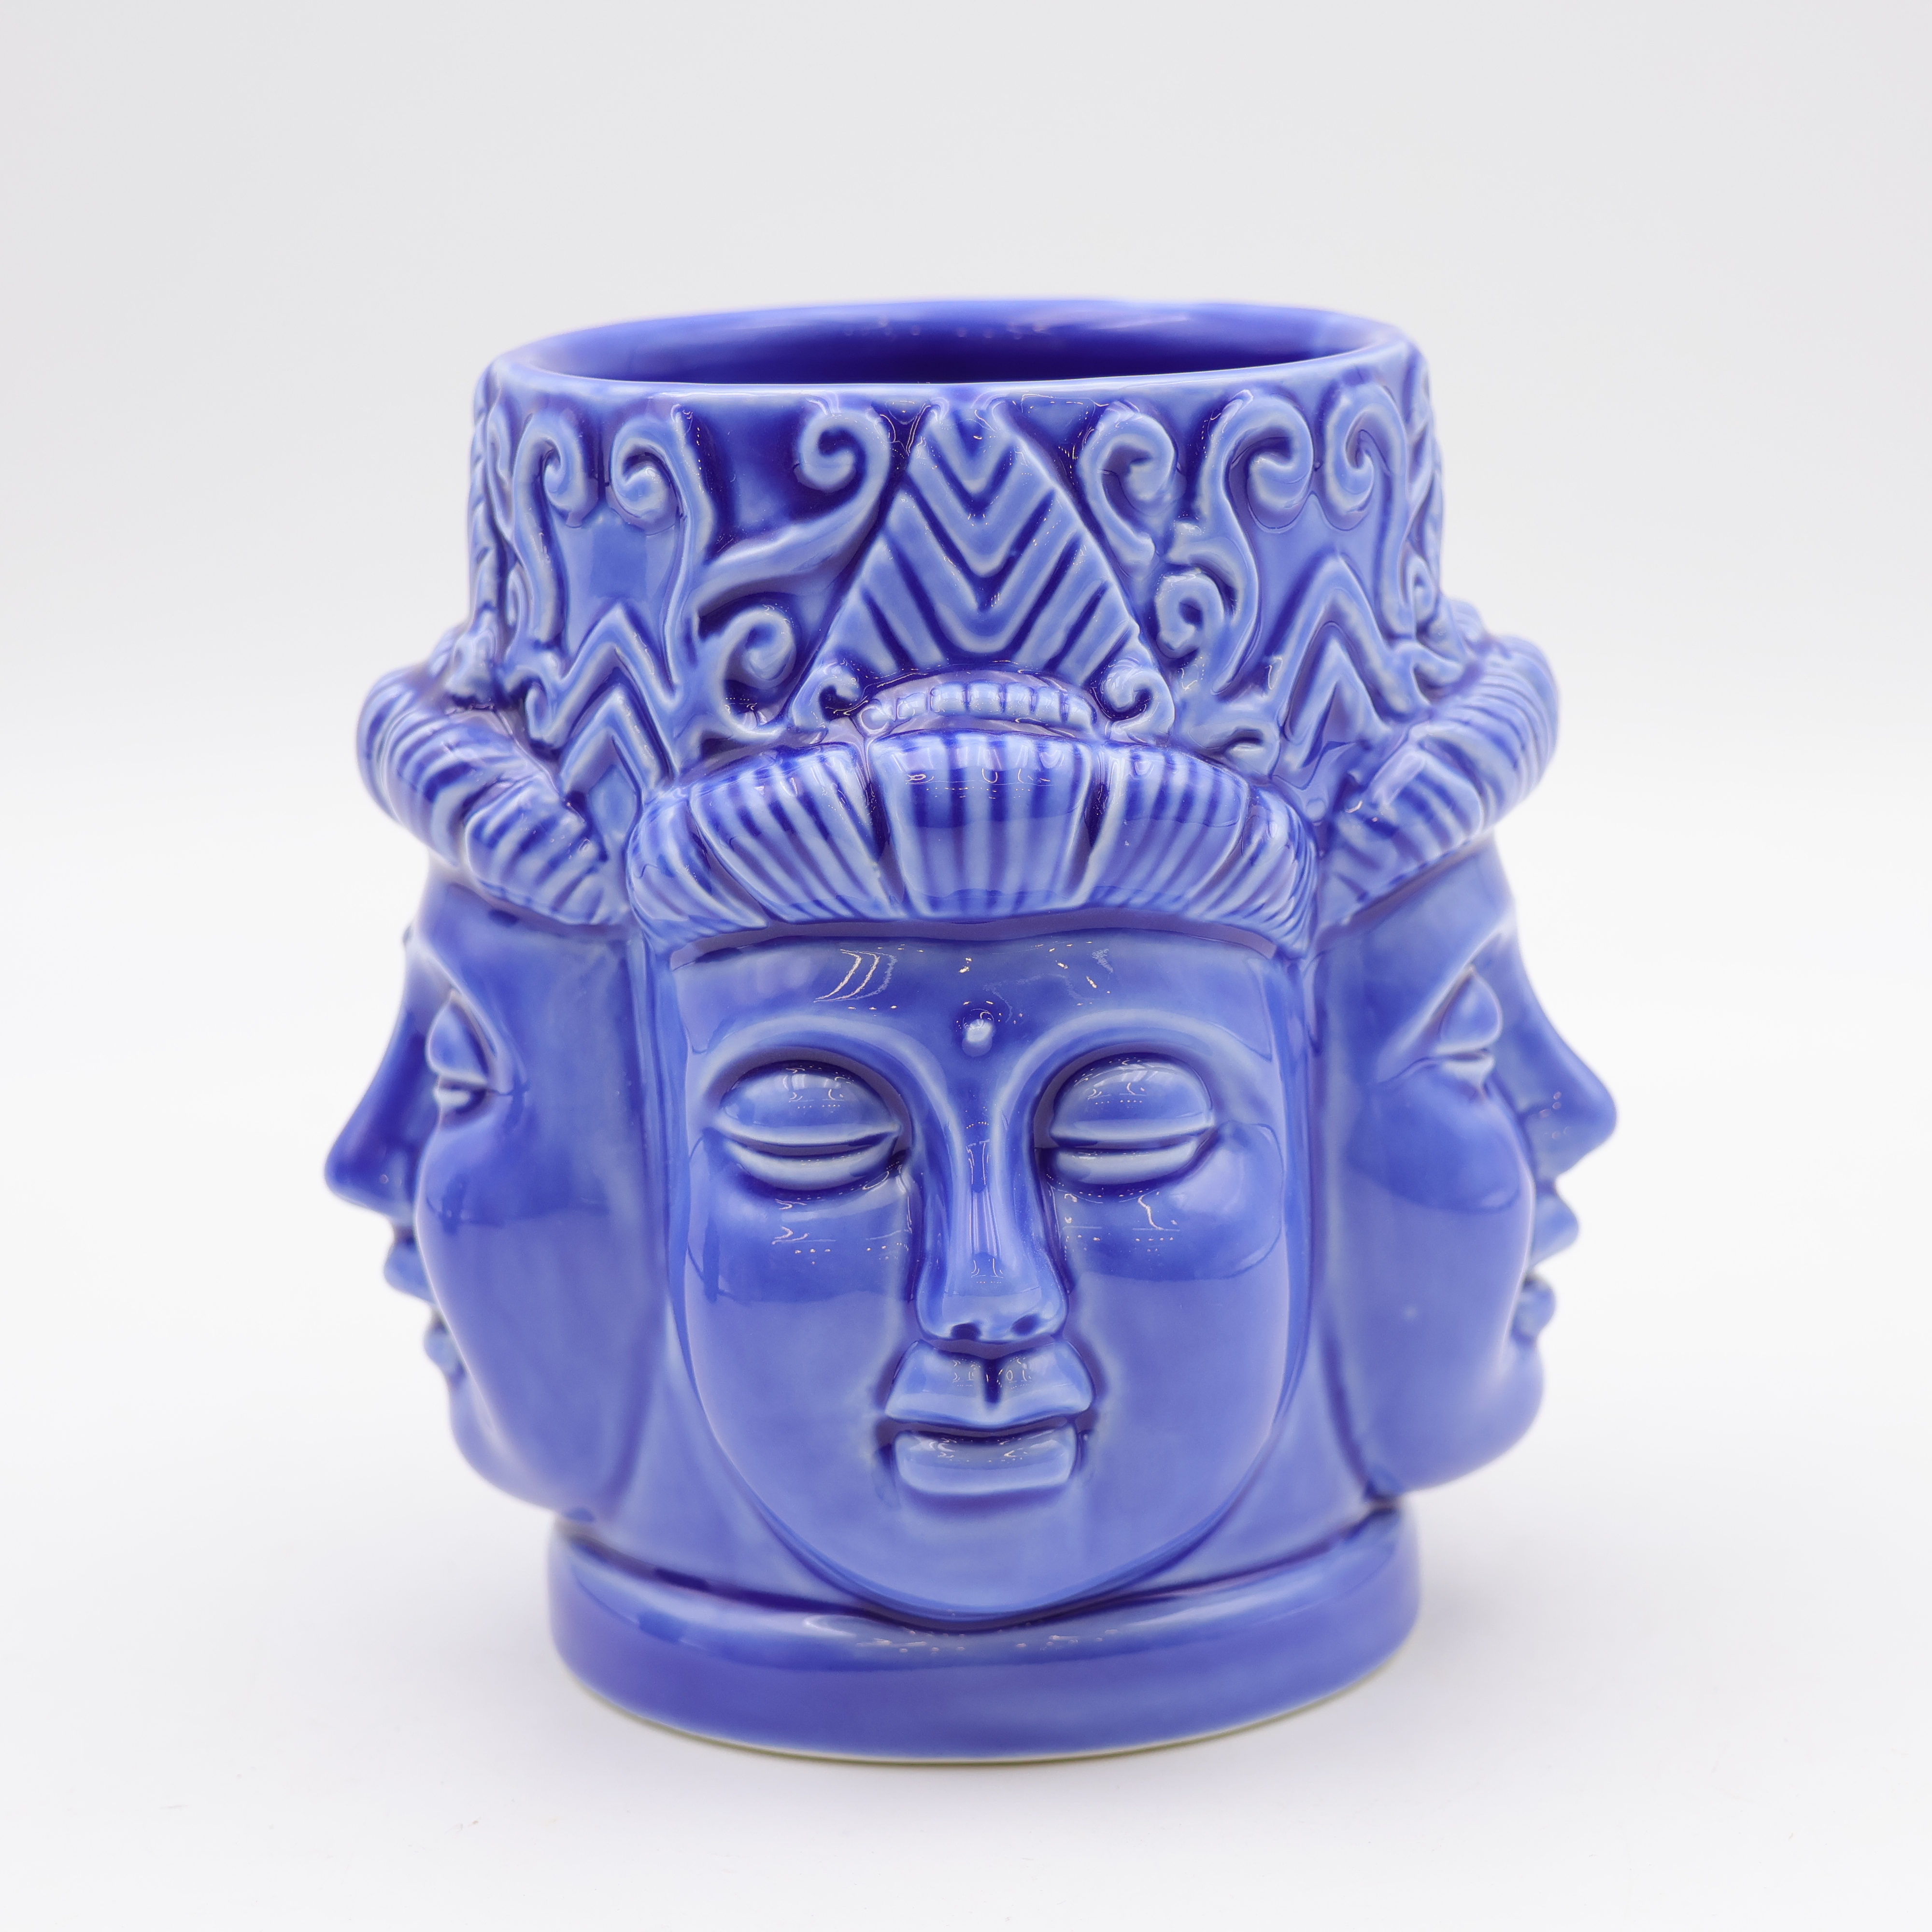 Keraamiline Buddha mitme näo kruus, sinine